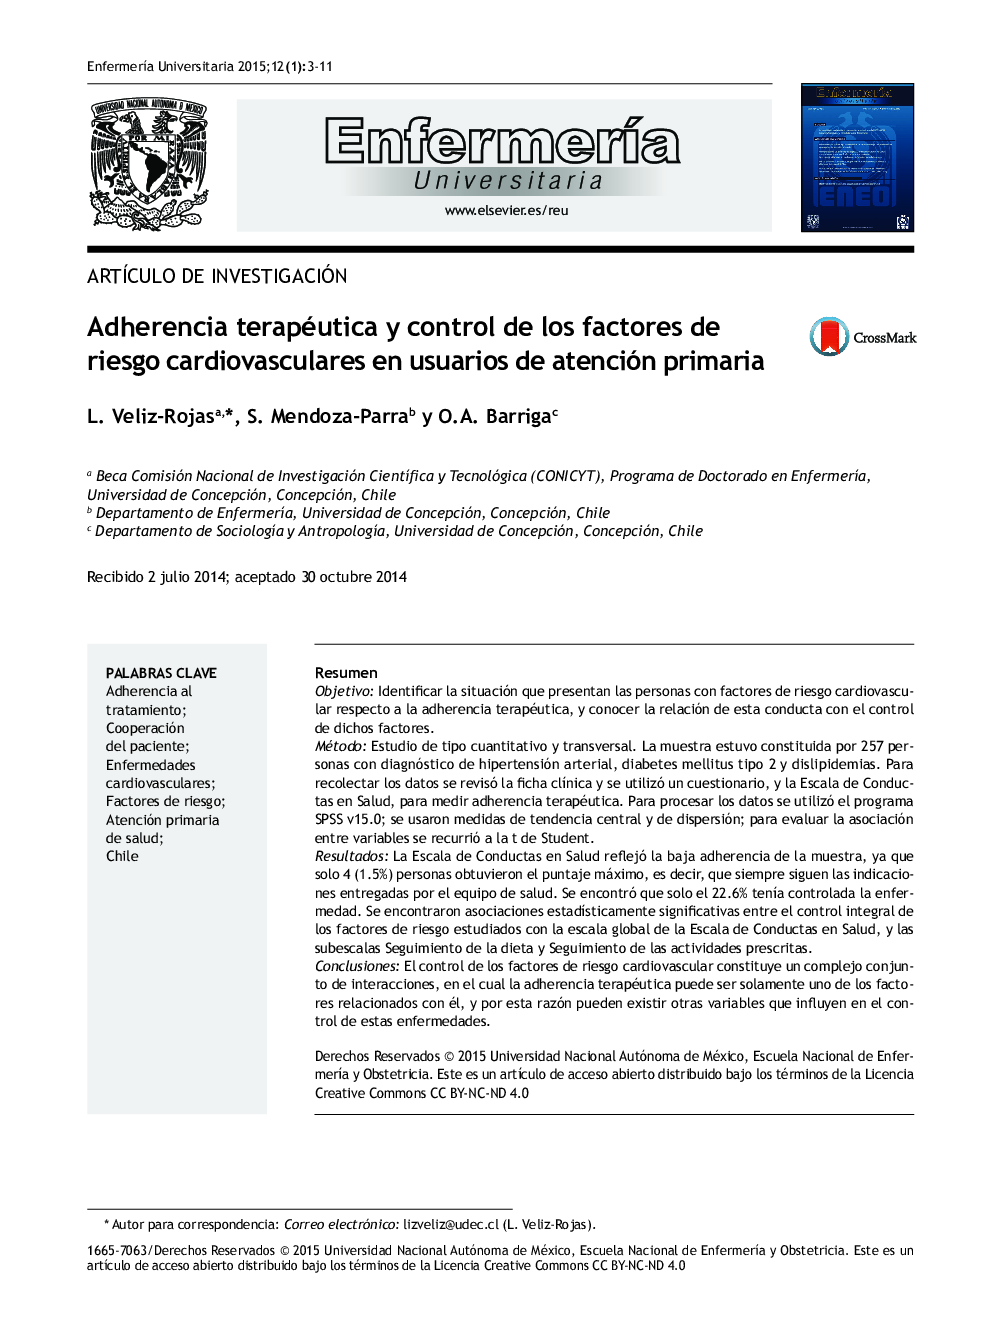 Adherencia terapéutica y control de los factores de riesgo cardiovasculares en usuarios de atención primaria